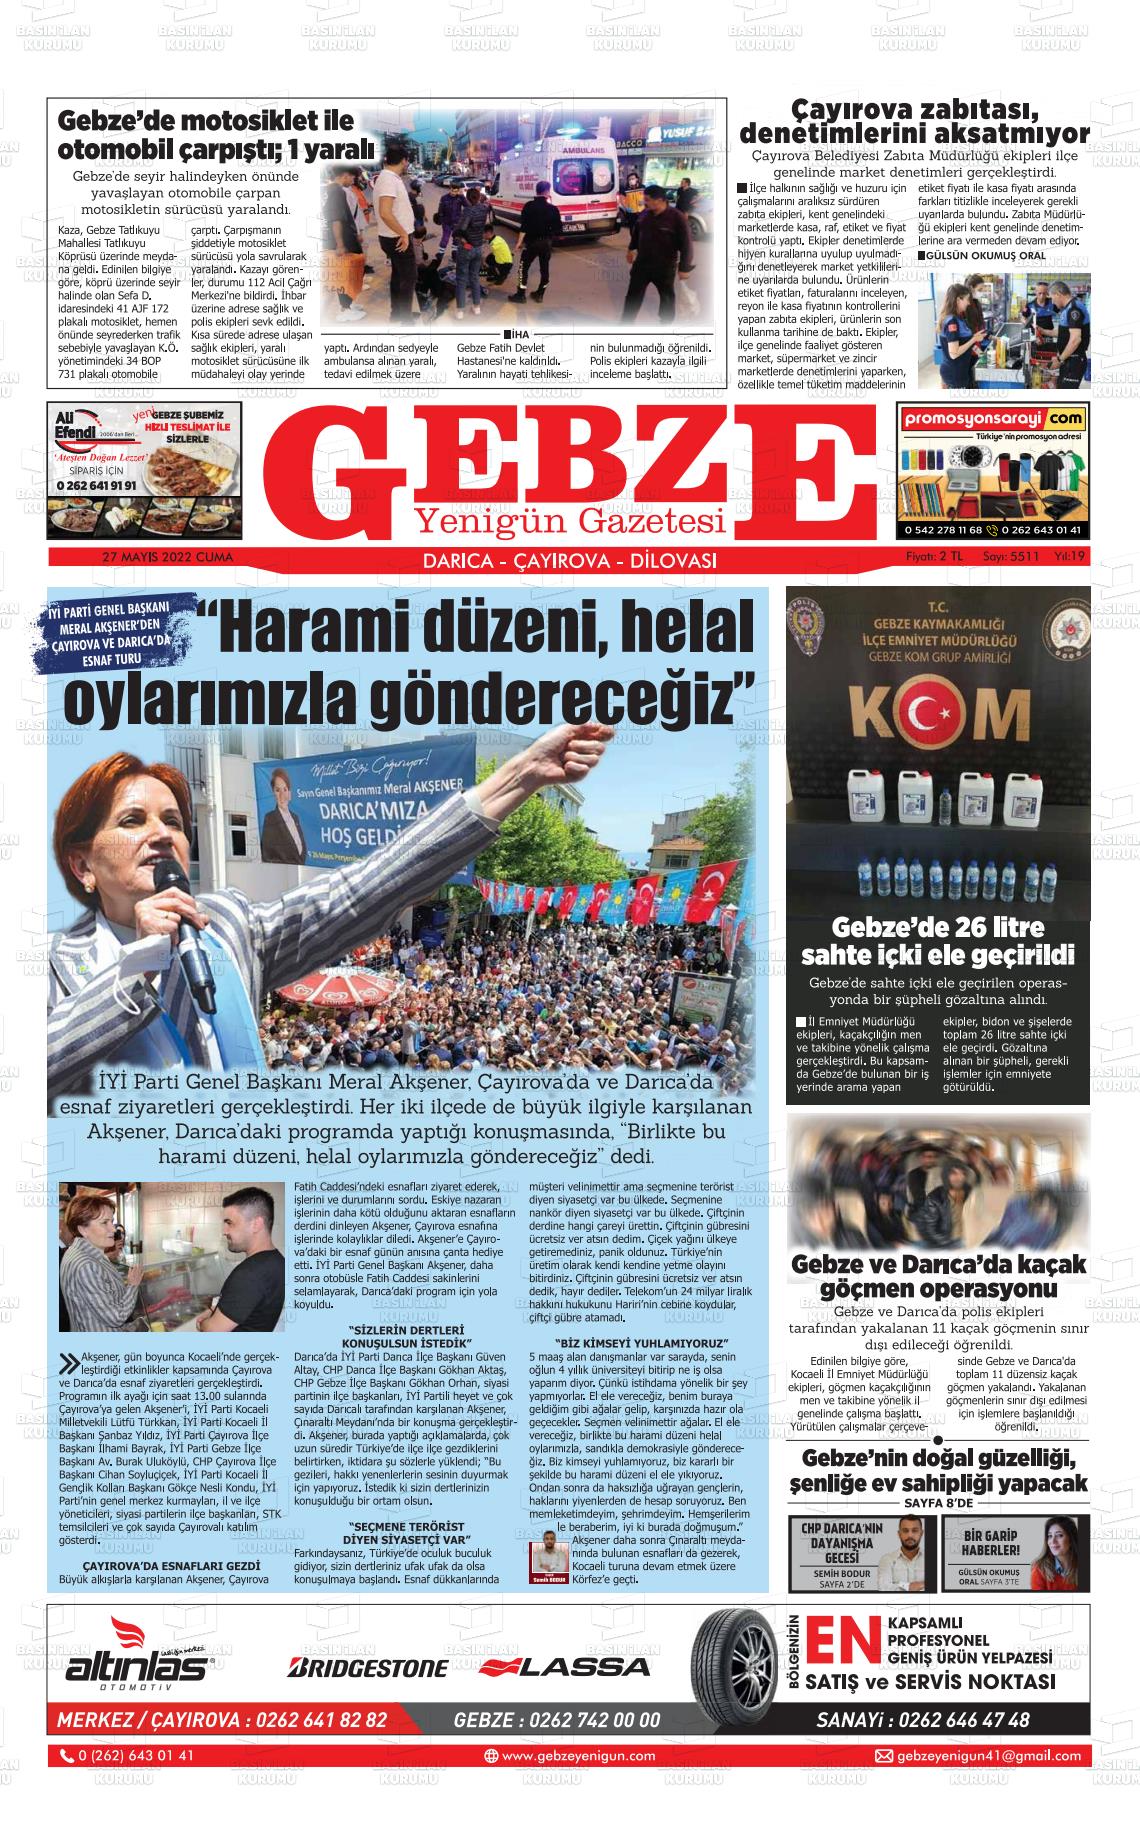 27 Mayıs 2022 Gebze Yenigün Gazete Manşeti